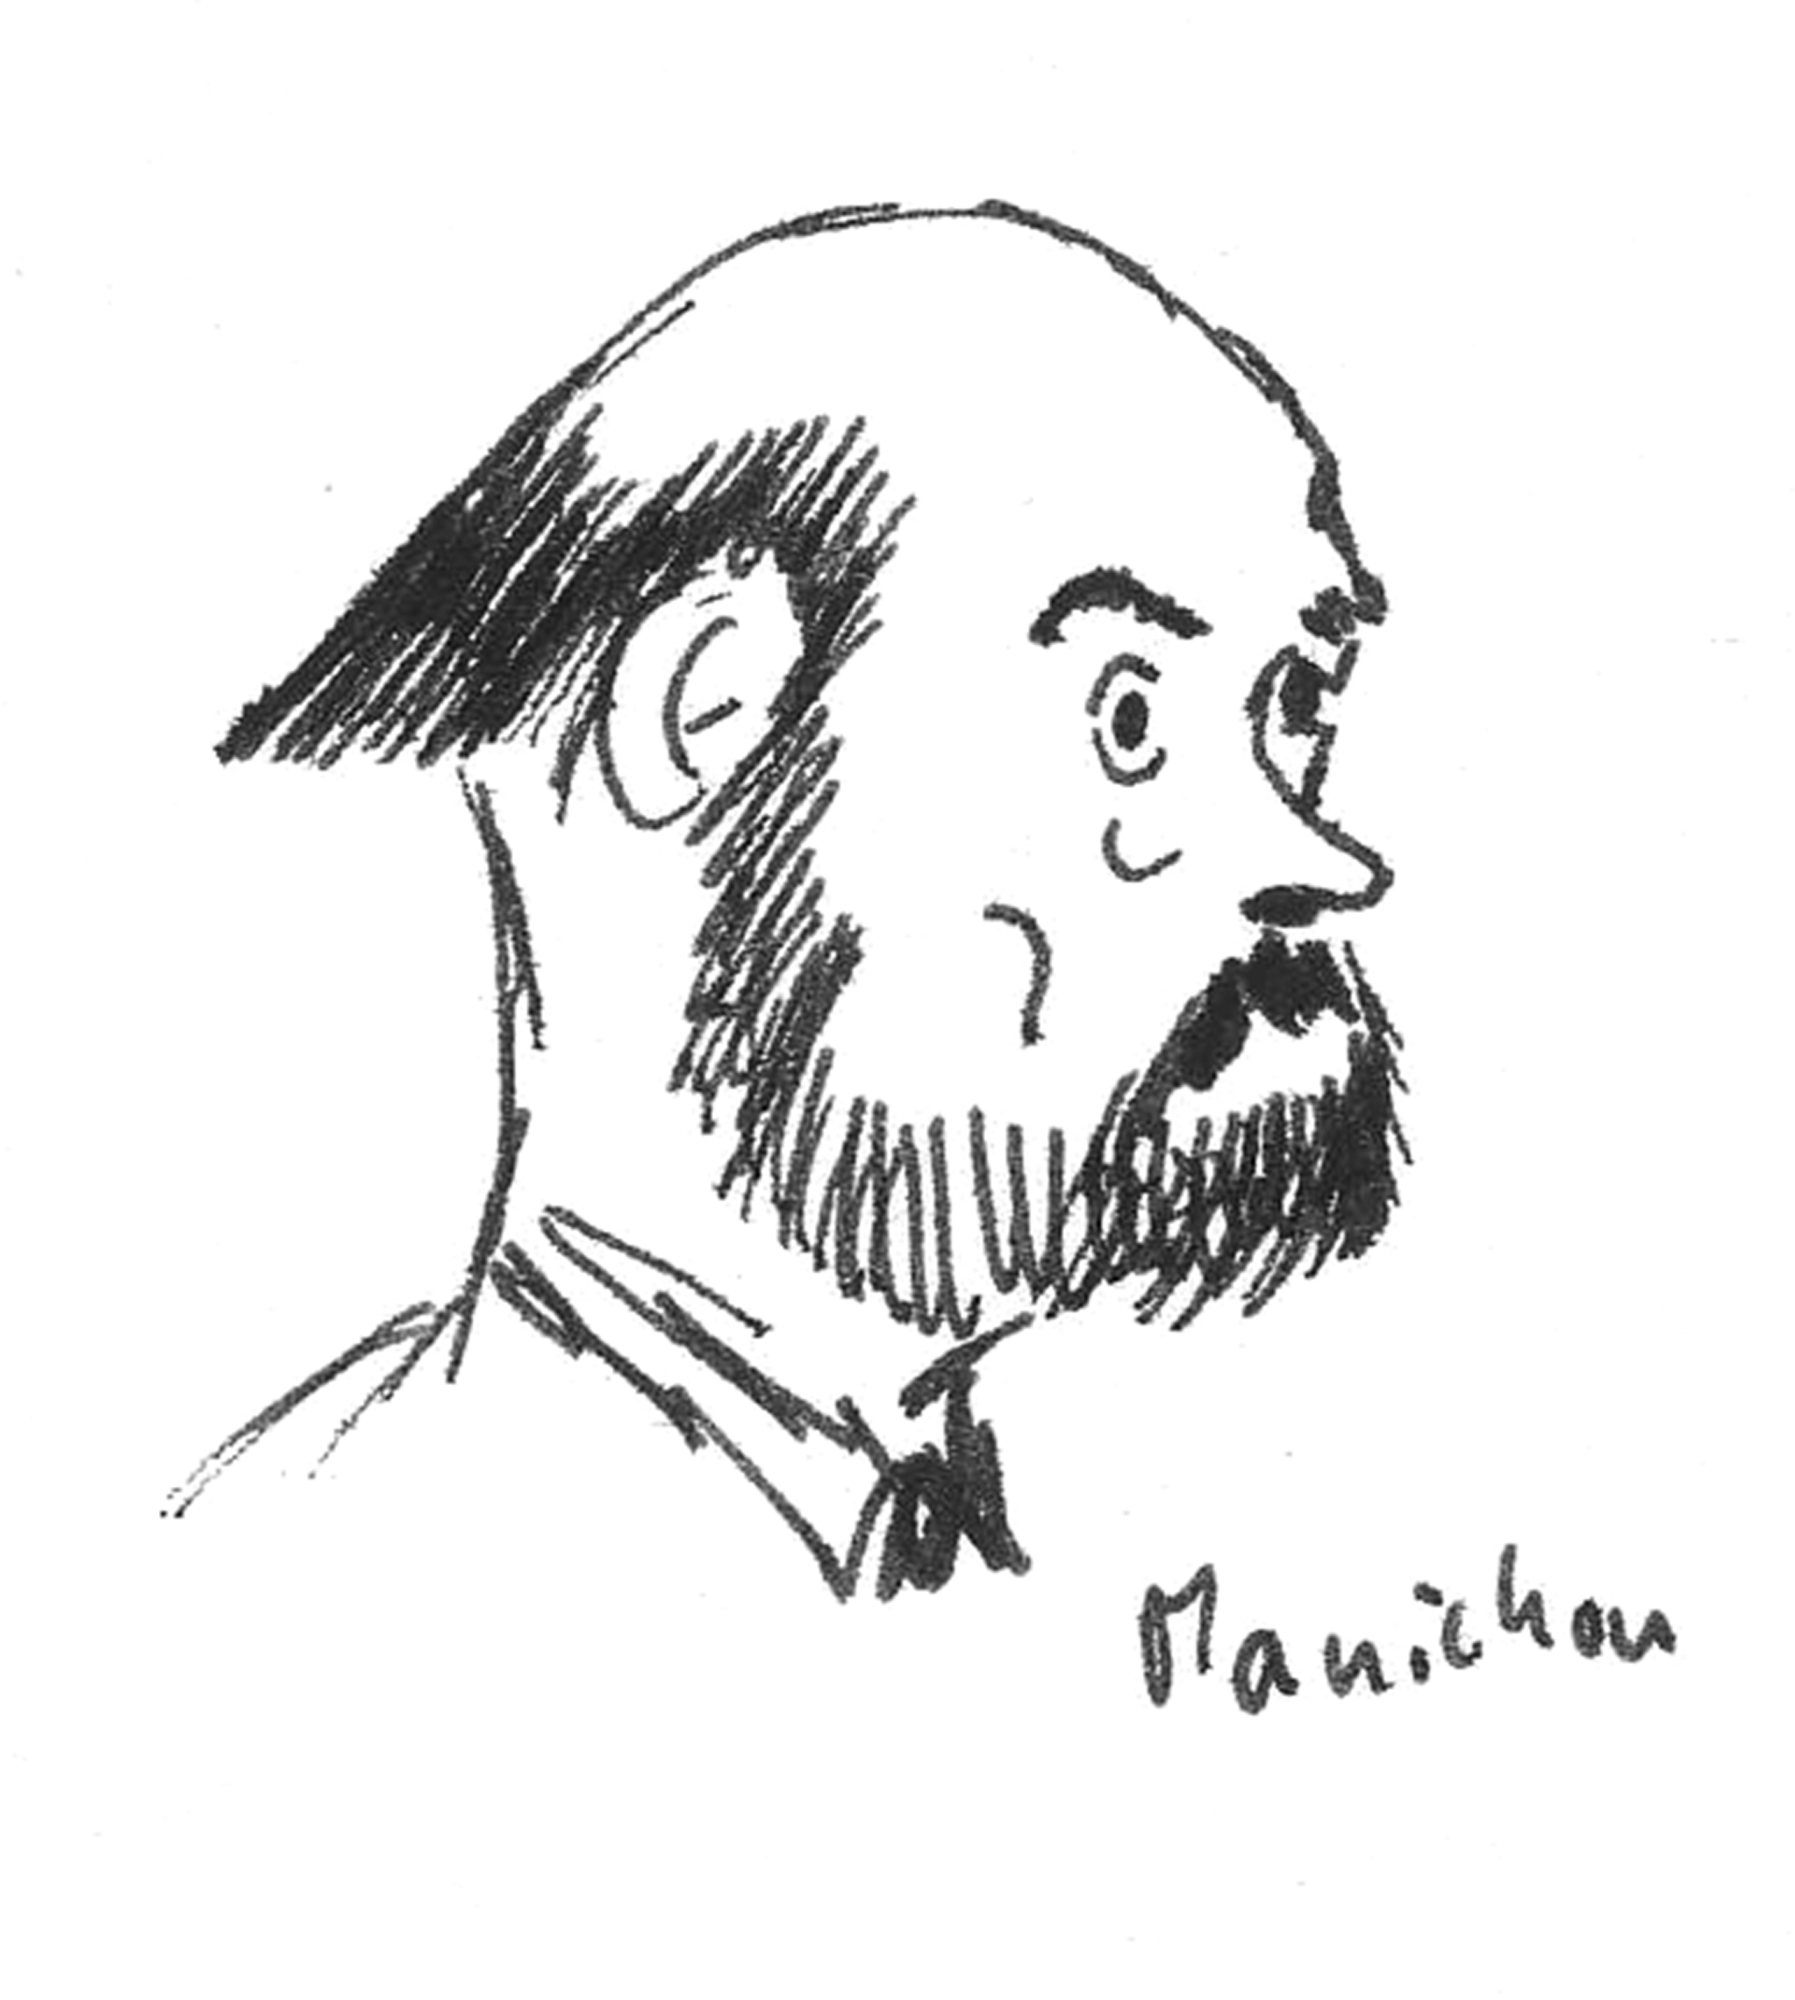 Hubert Manichon